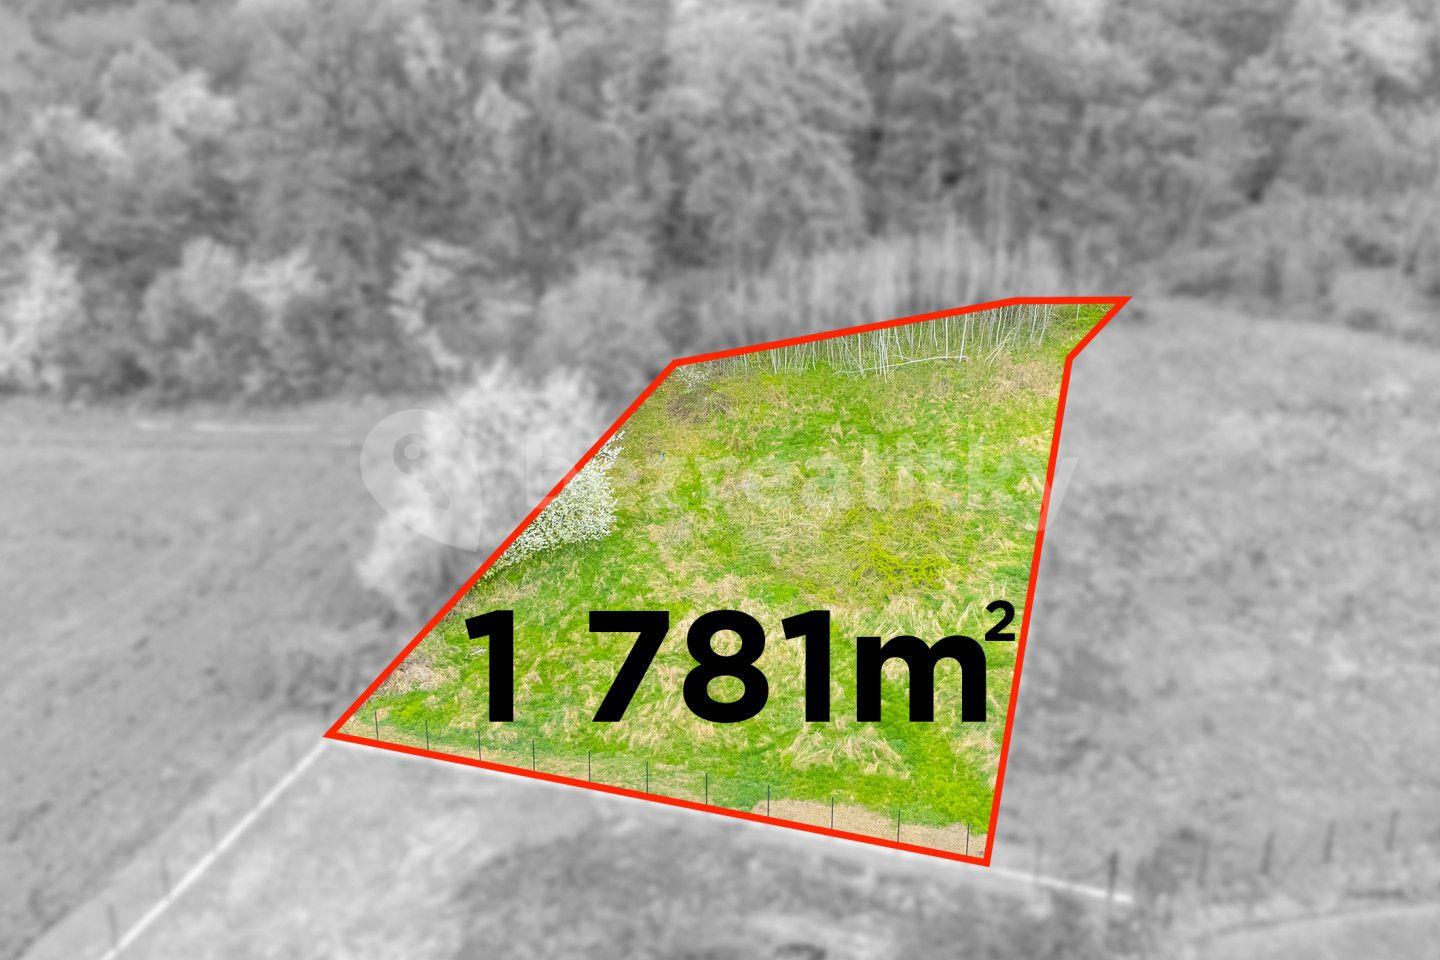 Prodej pozemku 1.781 m², Dolní Újezd, Olomoucký kraj